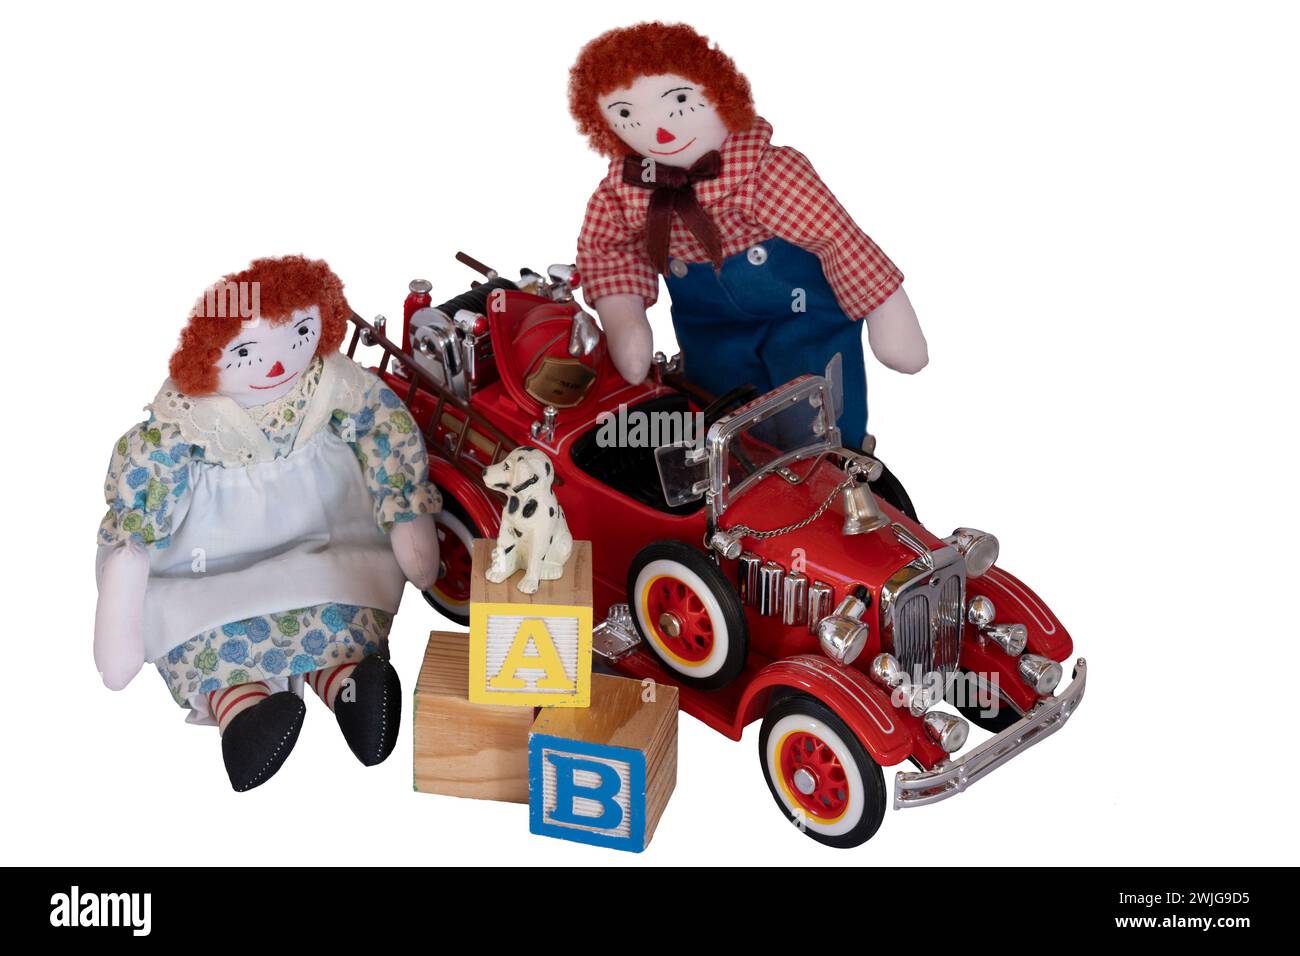 Bambole di stracci fatte a mano, Raggedy Ann & Andy collocate tra giocattoli, blocchi, motore antincendio, cane piccolo, cappello da pompiere, vecchi e nuovi giocattoli in legno e metallo. Isolato Foto Stock